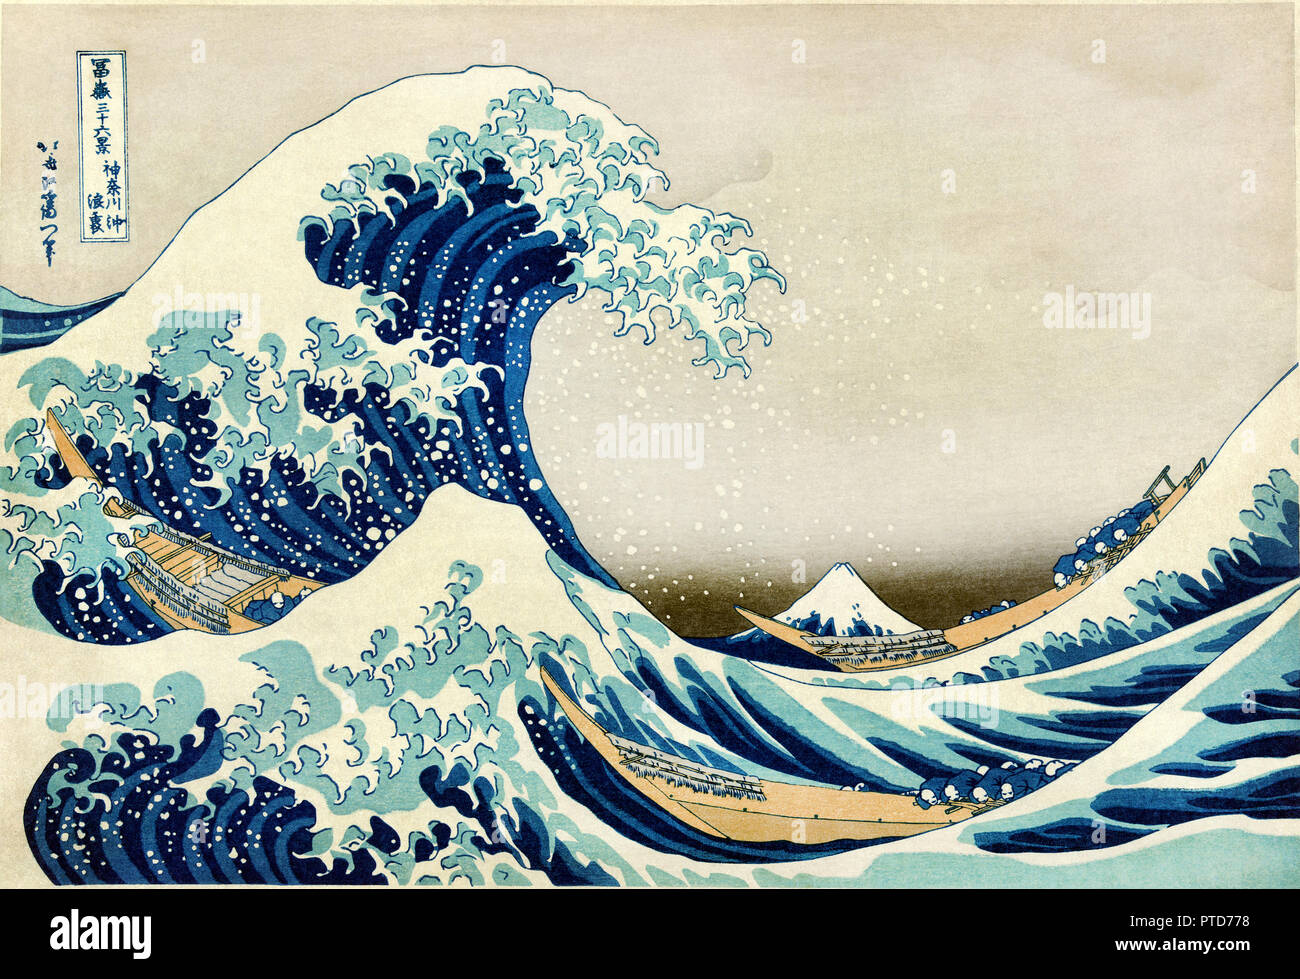 Katsushika Hokusai, Thirty-Six Vues du Mont Fuji : La grande vague au large de Kanagawa, 19e siècle, l'estampe Couleur, Musée National de Tokyo, Japon. Banque D'Images